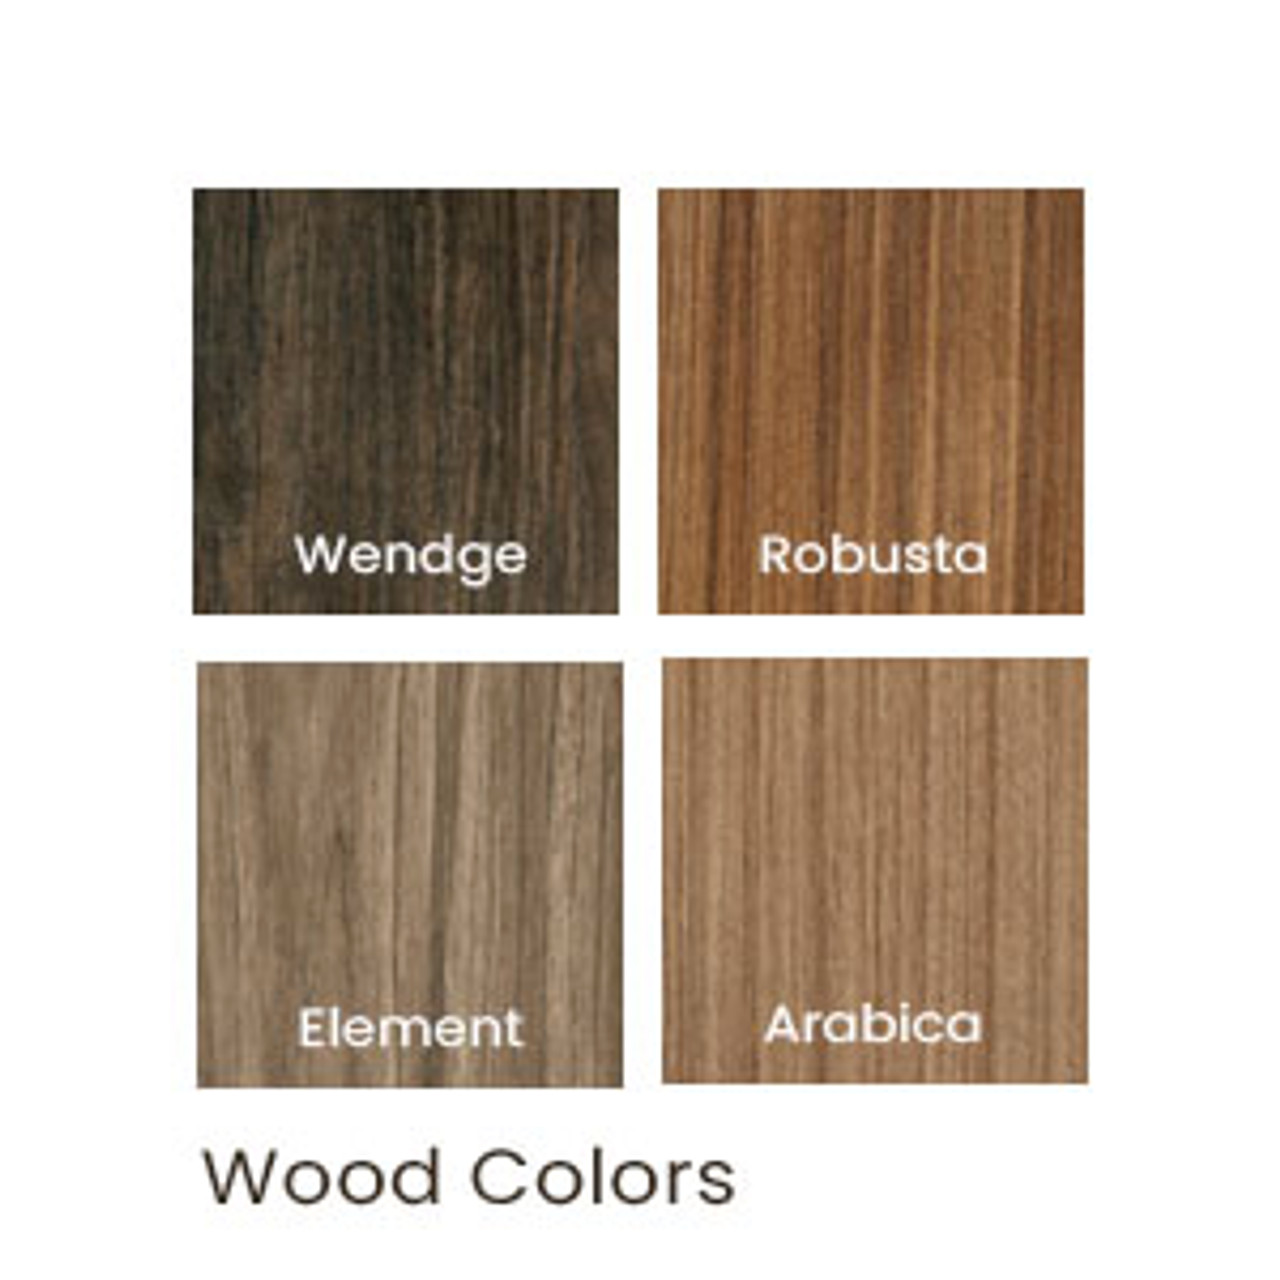 Wood colors